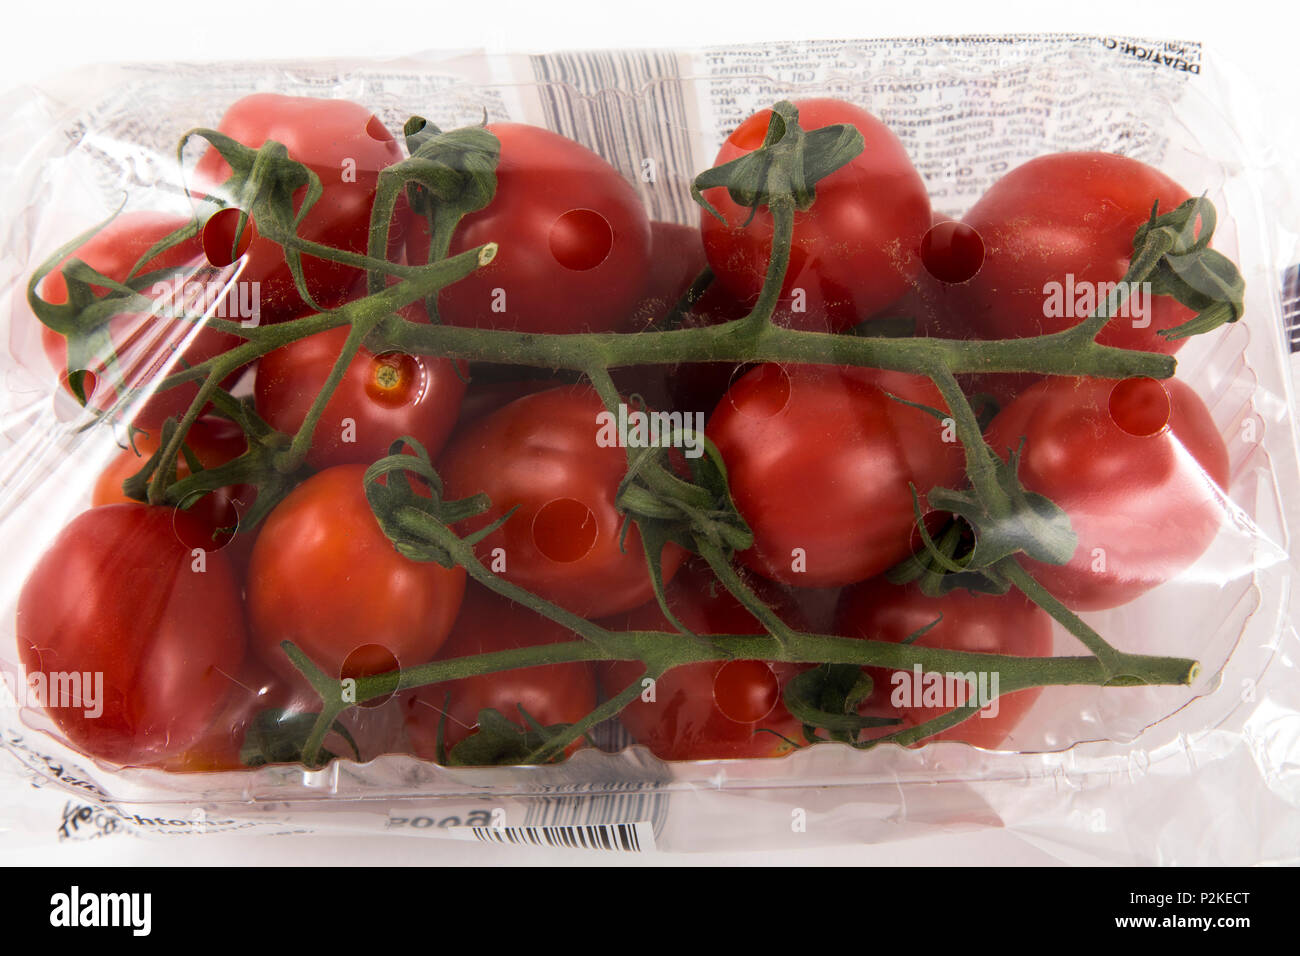 Il cibo fresco, verdure , ciascuno singolarmente confezionati in plastica tutto il cibo è disponibile nello stesso supermercato anche senza imballaggio plastico, tom Foto Stock